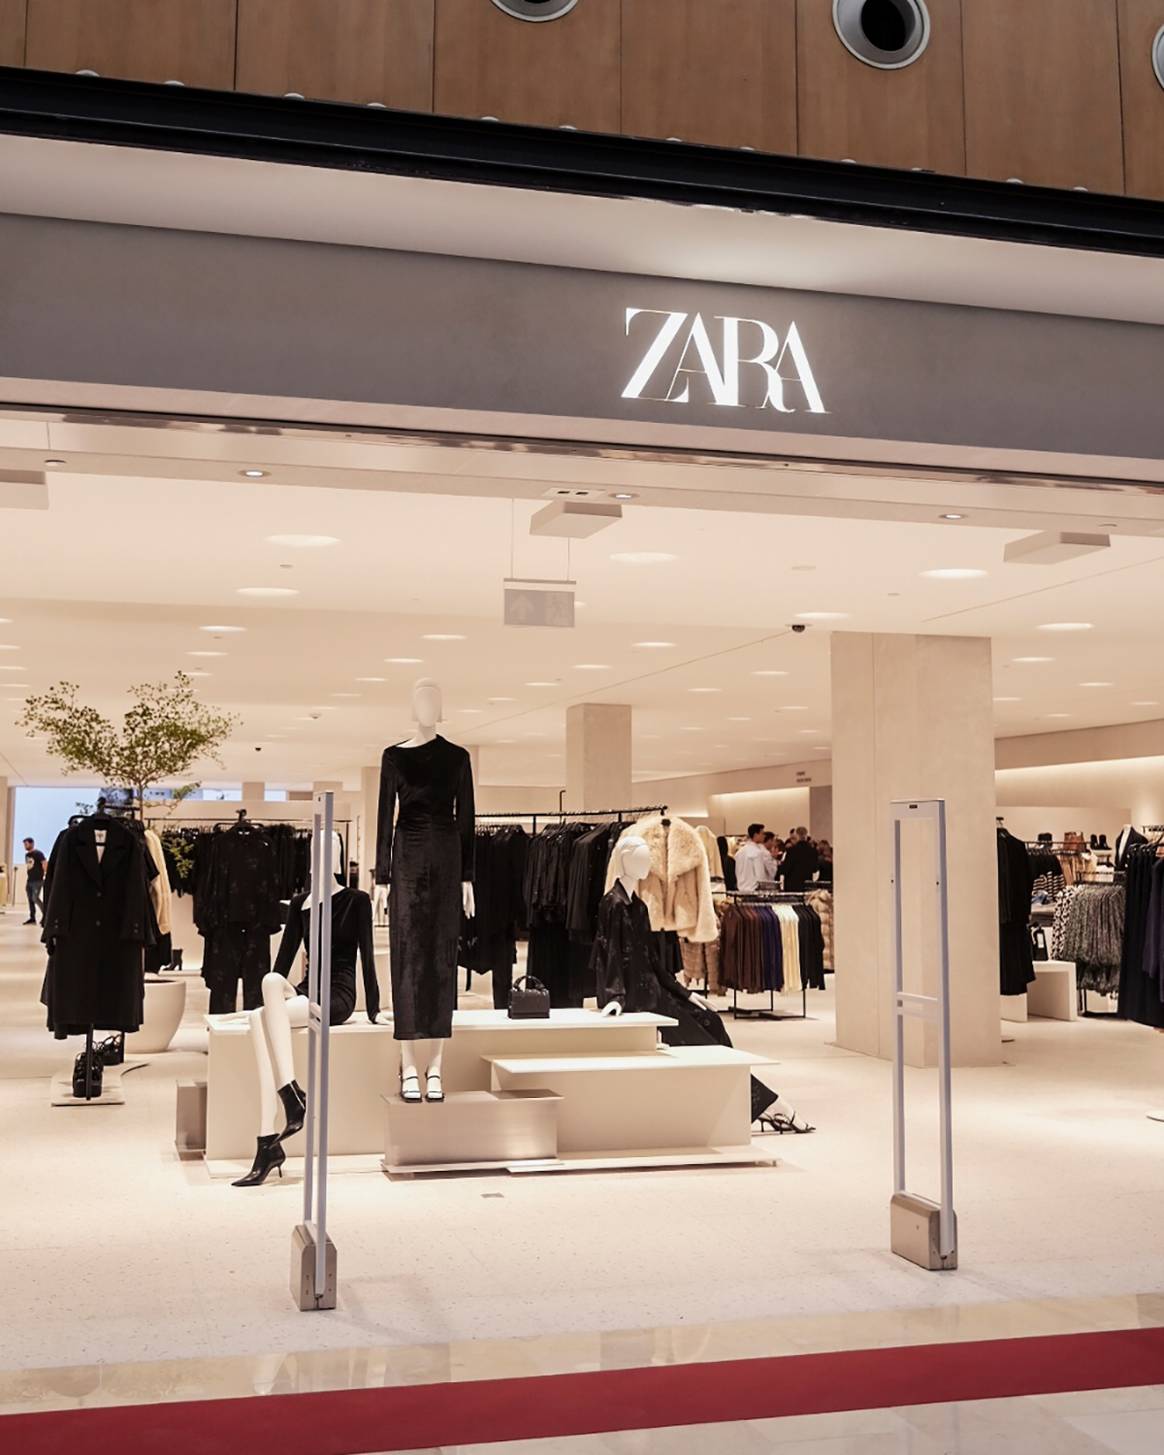 Photo Credits: Nueva tienda de Zara en el centro comercial Artea de Leioa, Vizcaya.